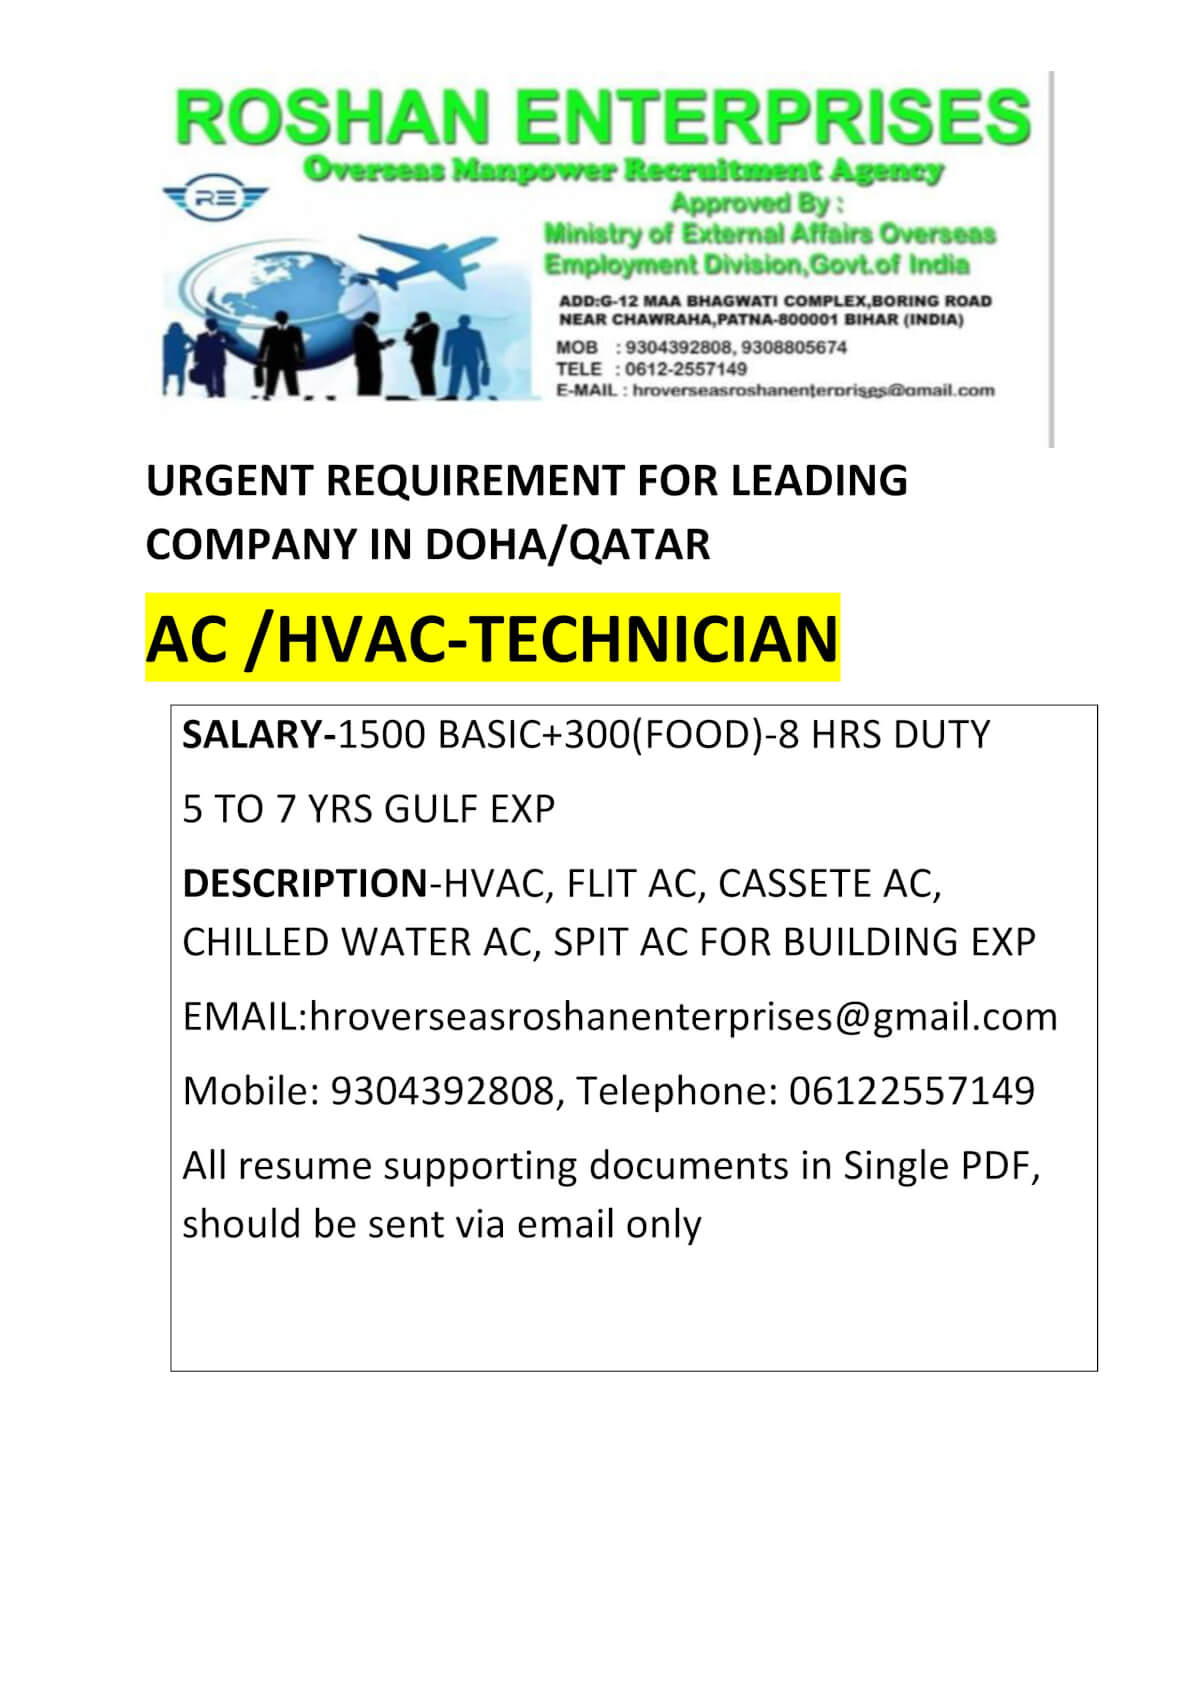 URGENT REQUIREMENT HVAC/AC TECHNICIAN FOR DOHA/QATAR